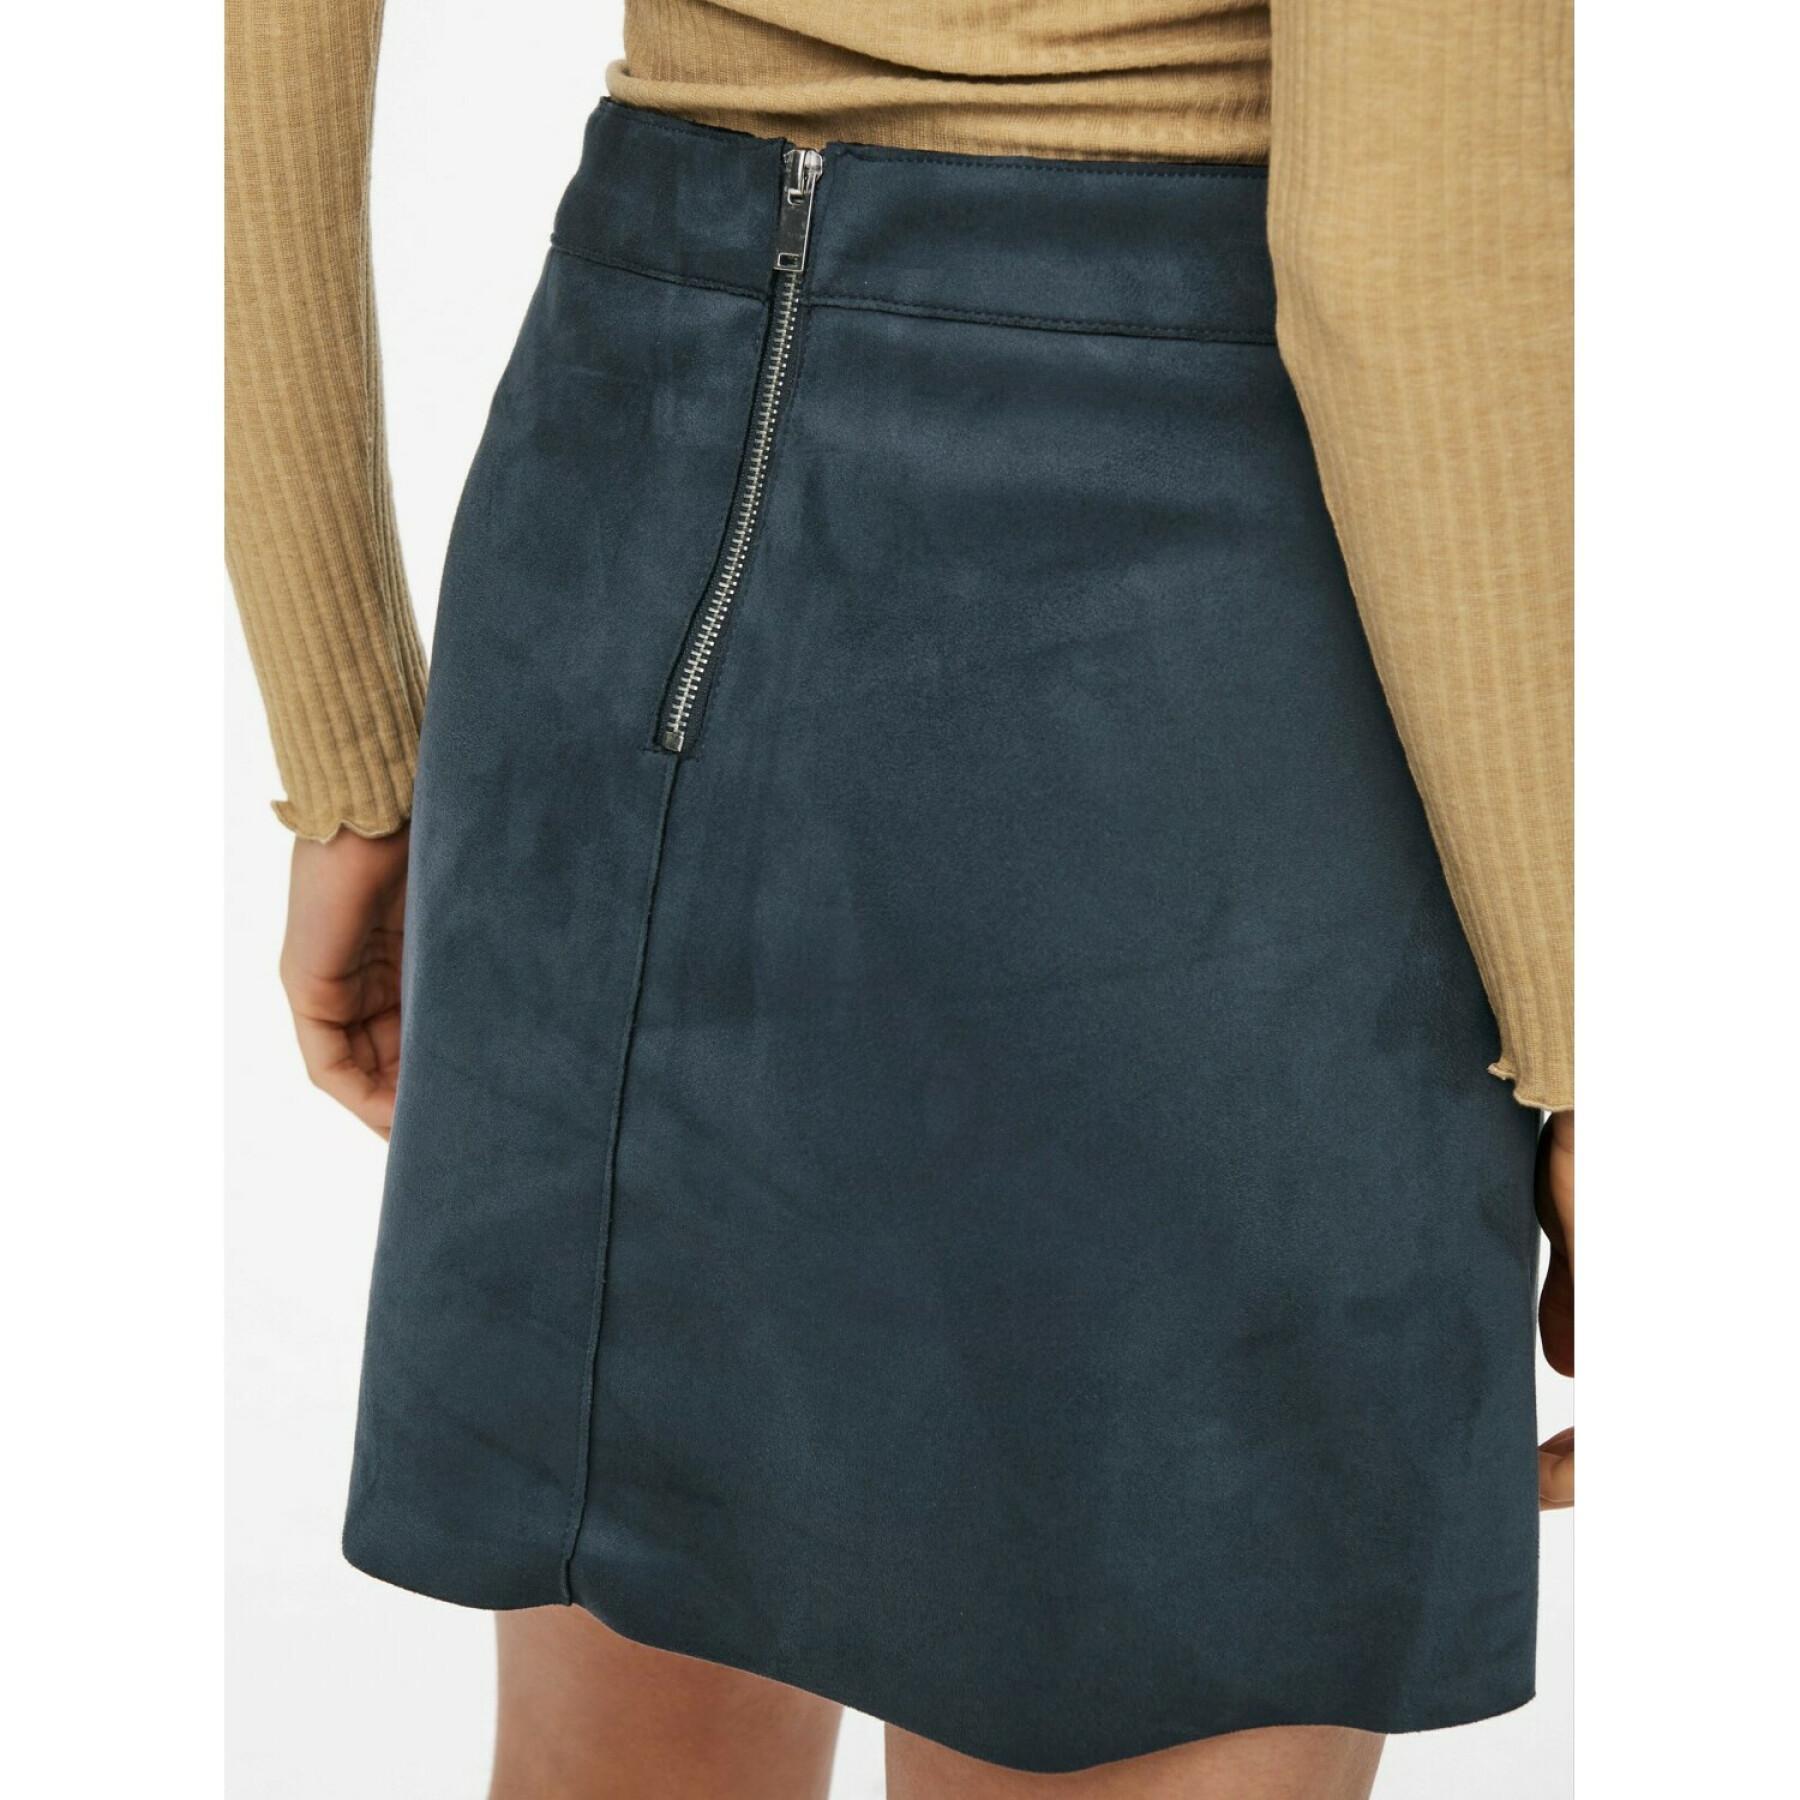 Women's skirt Only onllinea faux suede